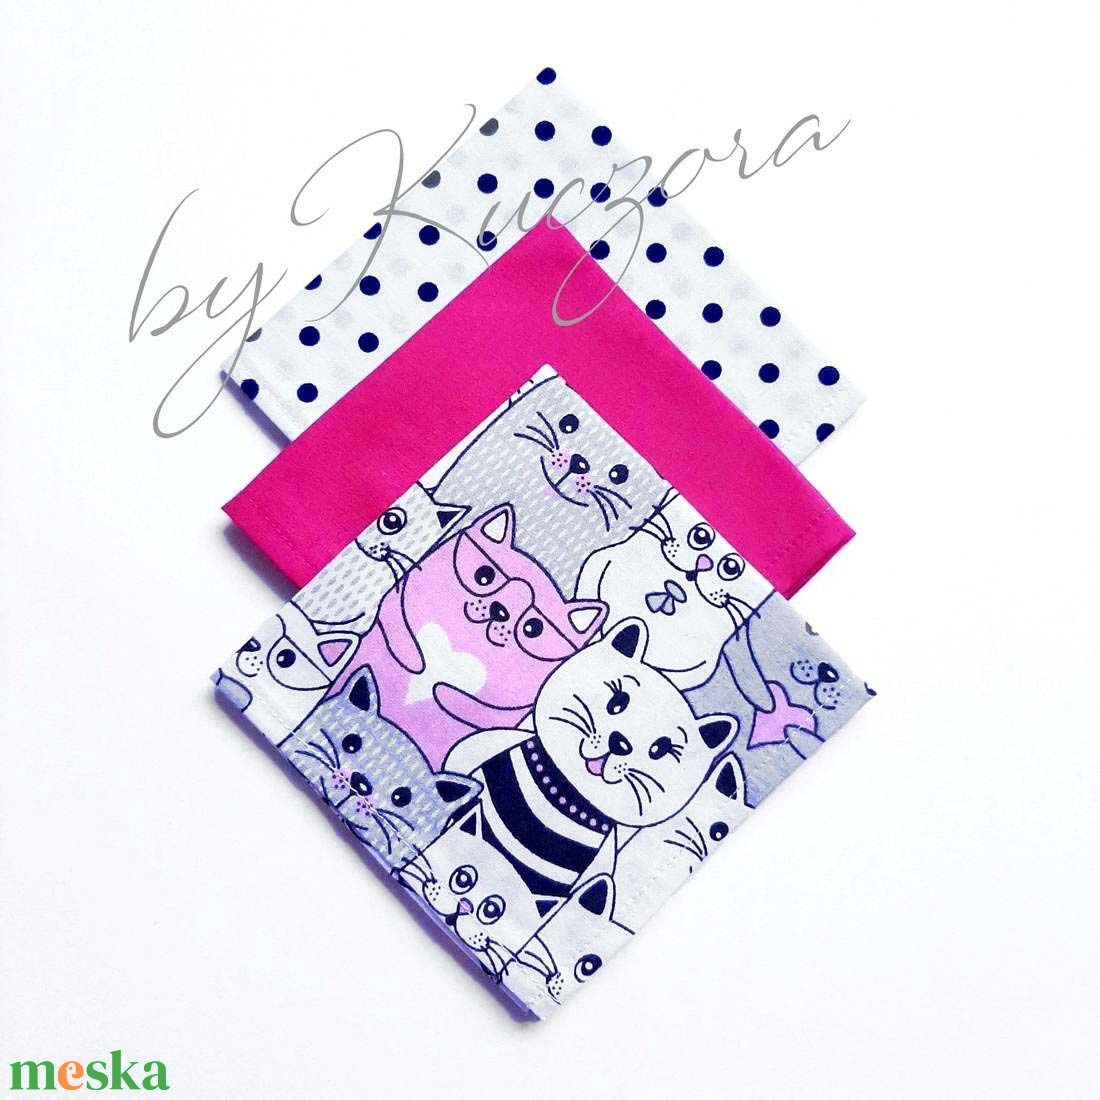 Textil zsebkendő szett, öko zsebkendő szett - fehér, pink, fekete - szépségápolás - egészségmegőrzés - Meska.hu